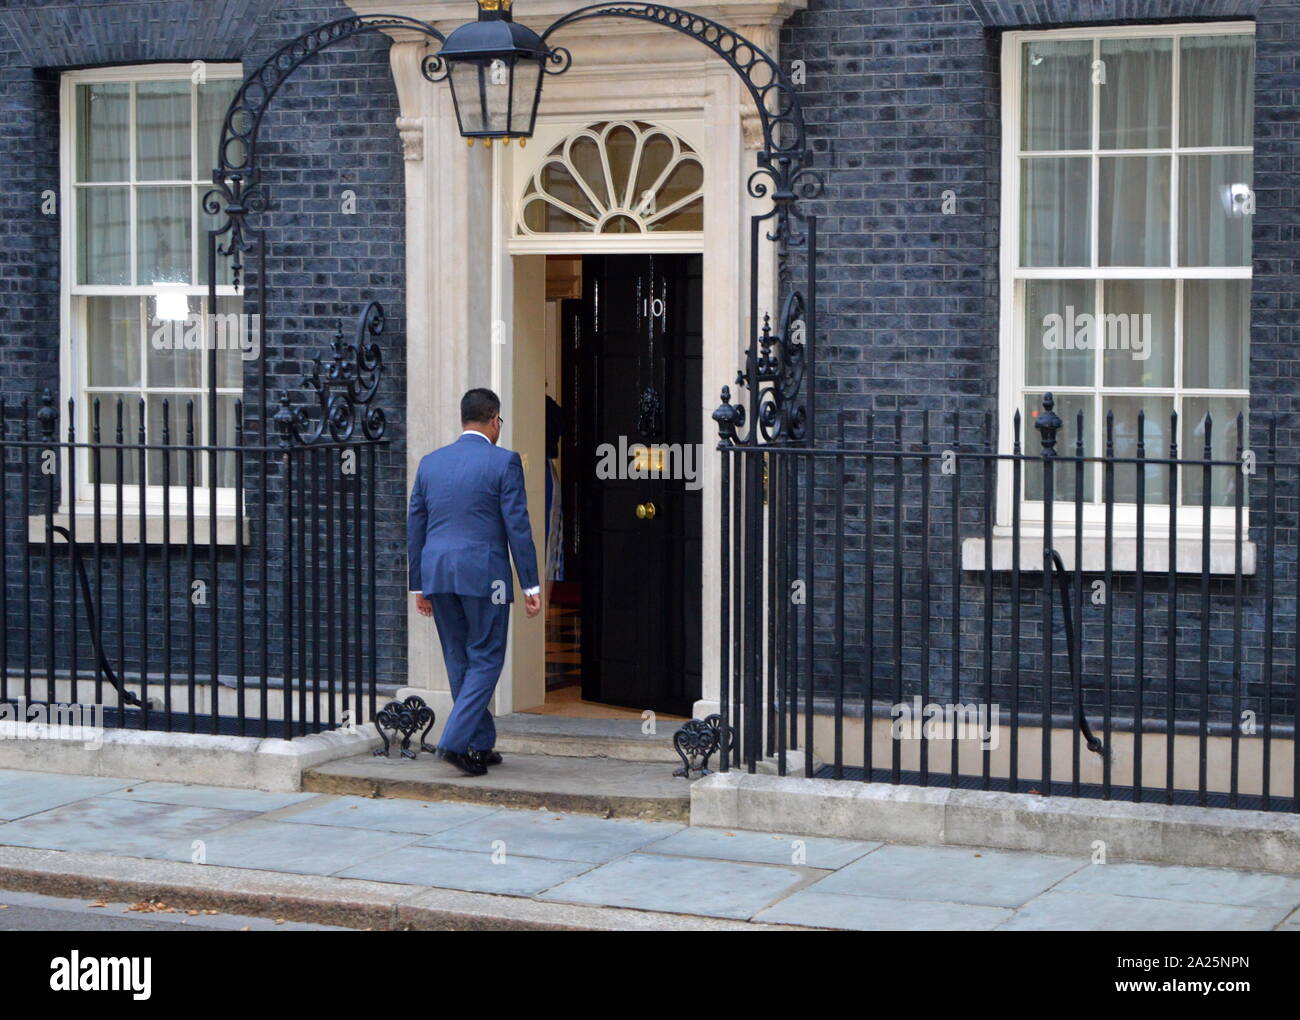 Alok Sharma; britischen konservativen Politiker, kommt an der Downing Street Nummer 10 als Minister für Internationale Entwicklung unter Boris Johnson ernannt zu werden. Stockfoto